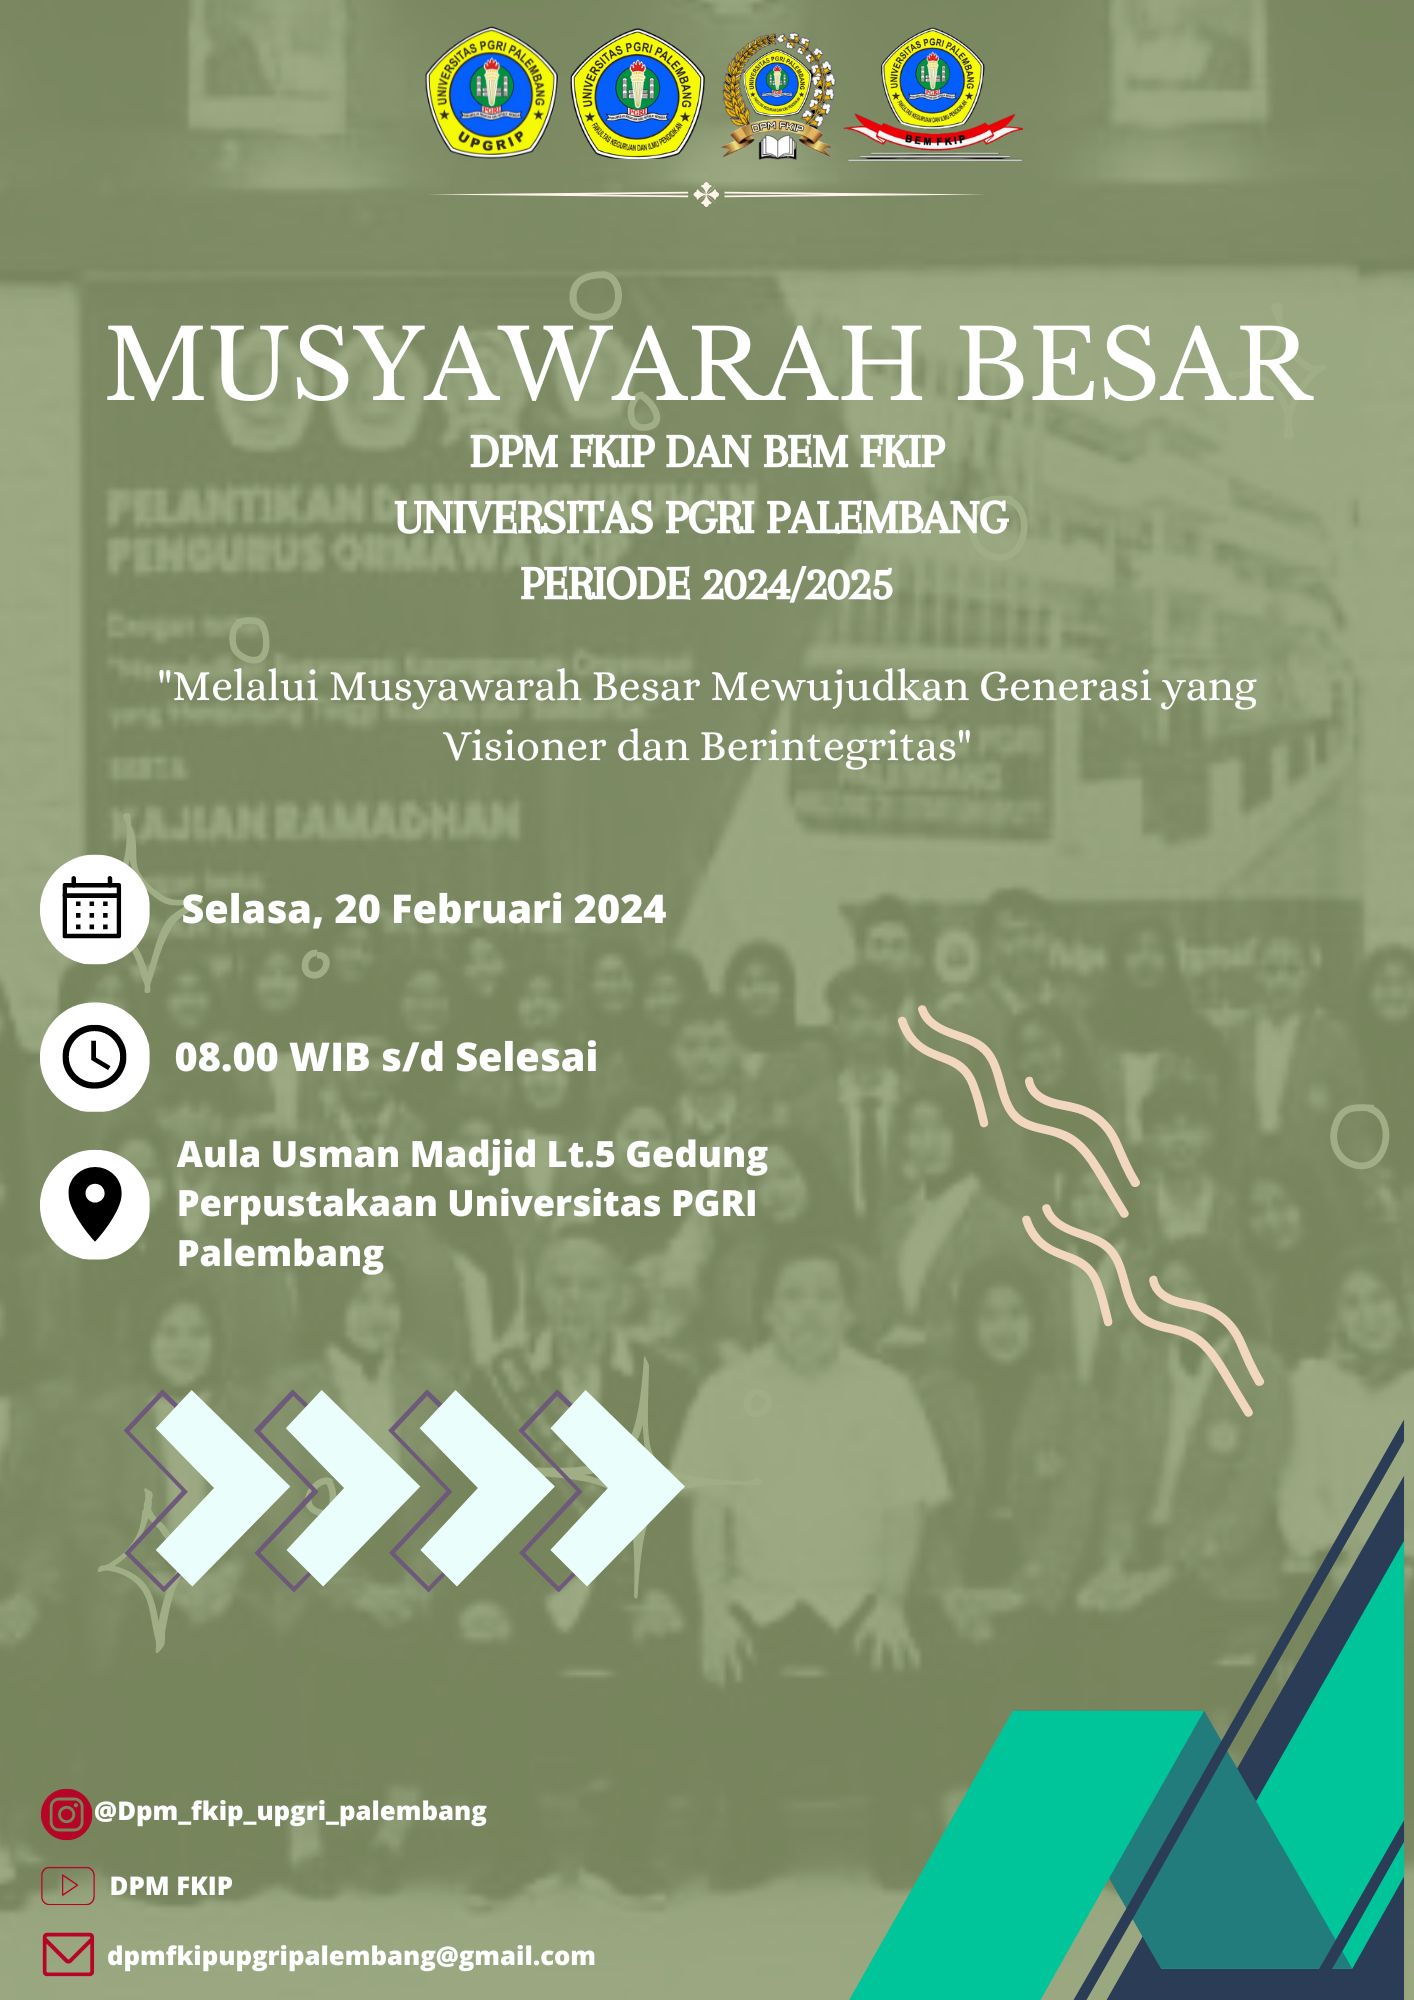 Musyawarah Besar DPM & BEM FKIP Universitas PGRI Palembang 20 Februari 2024